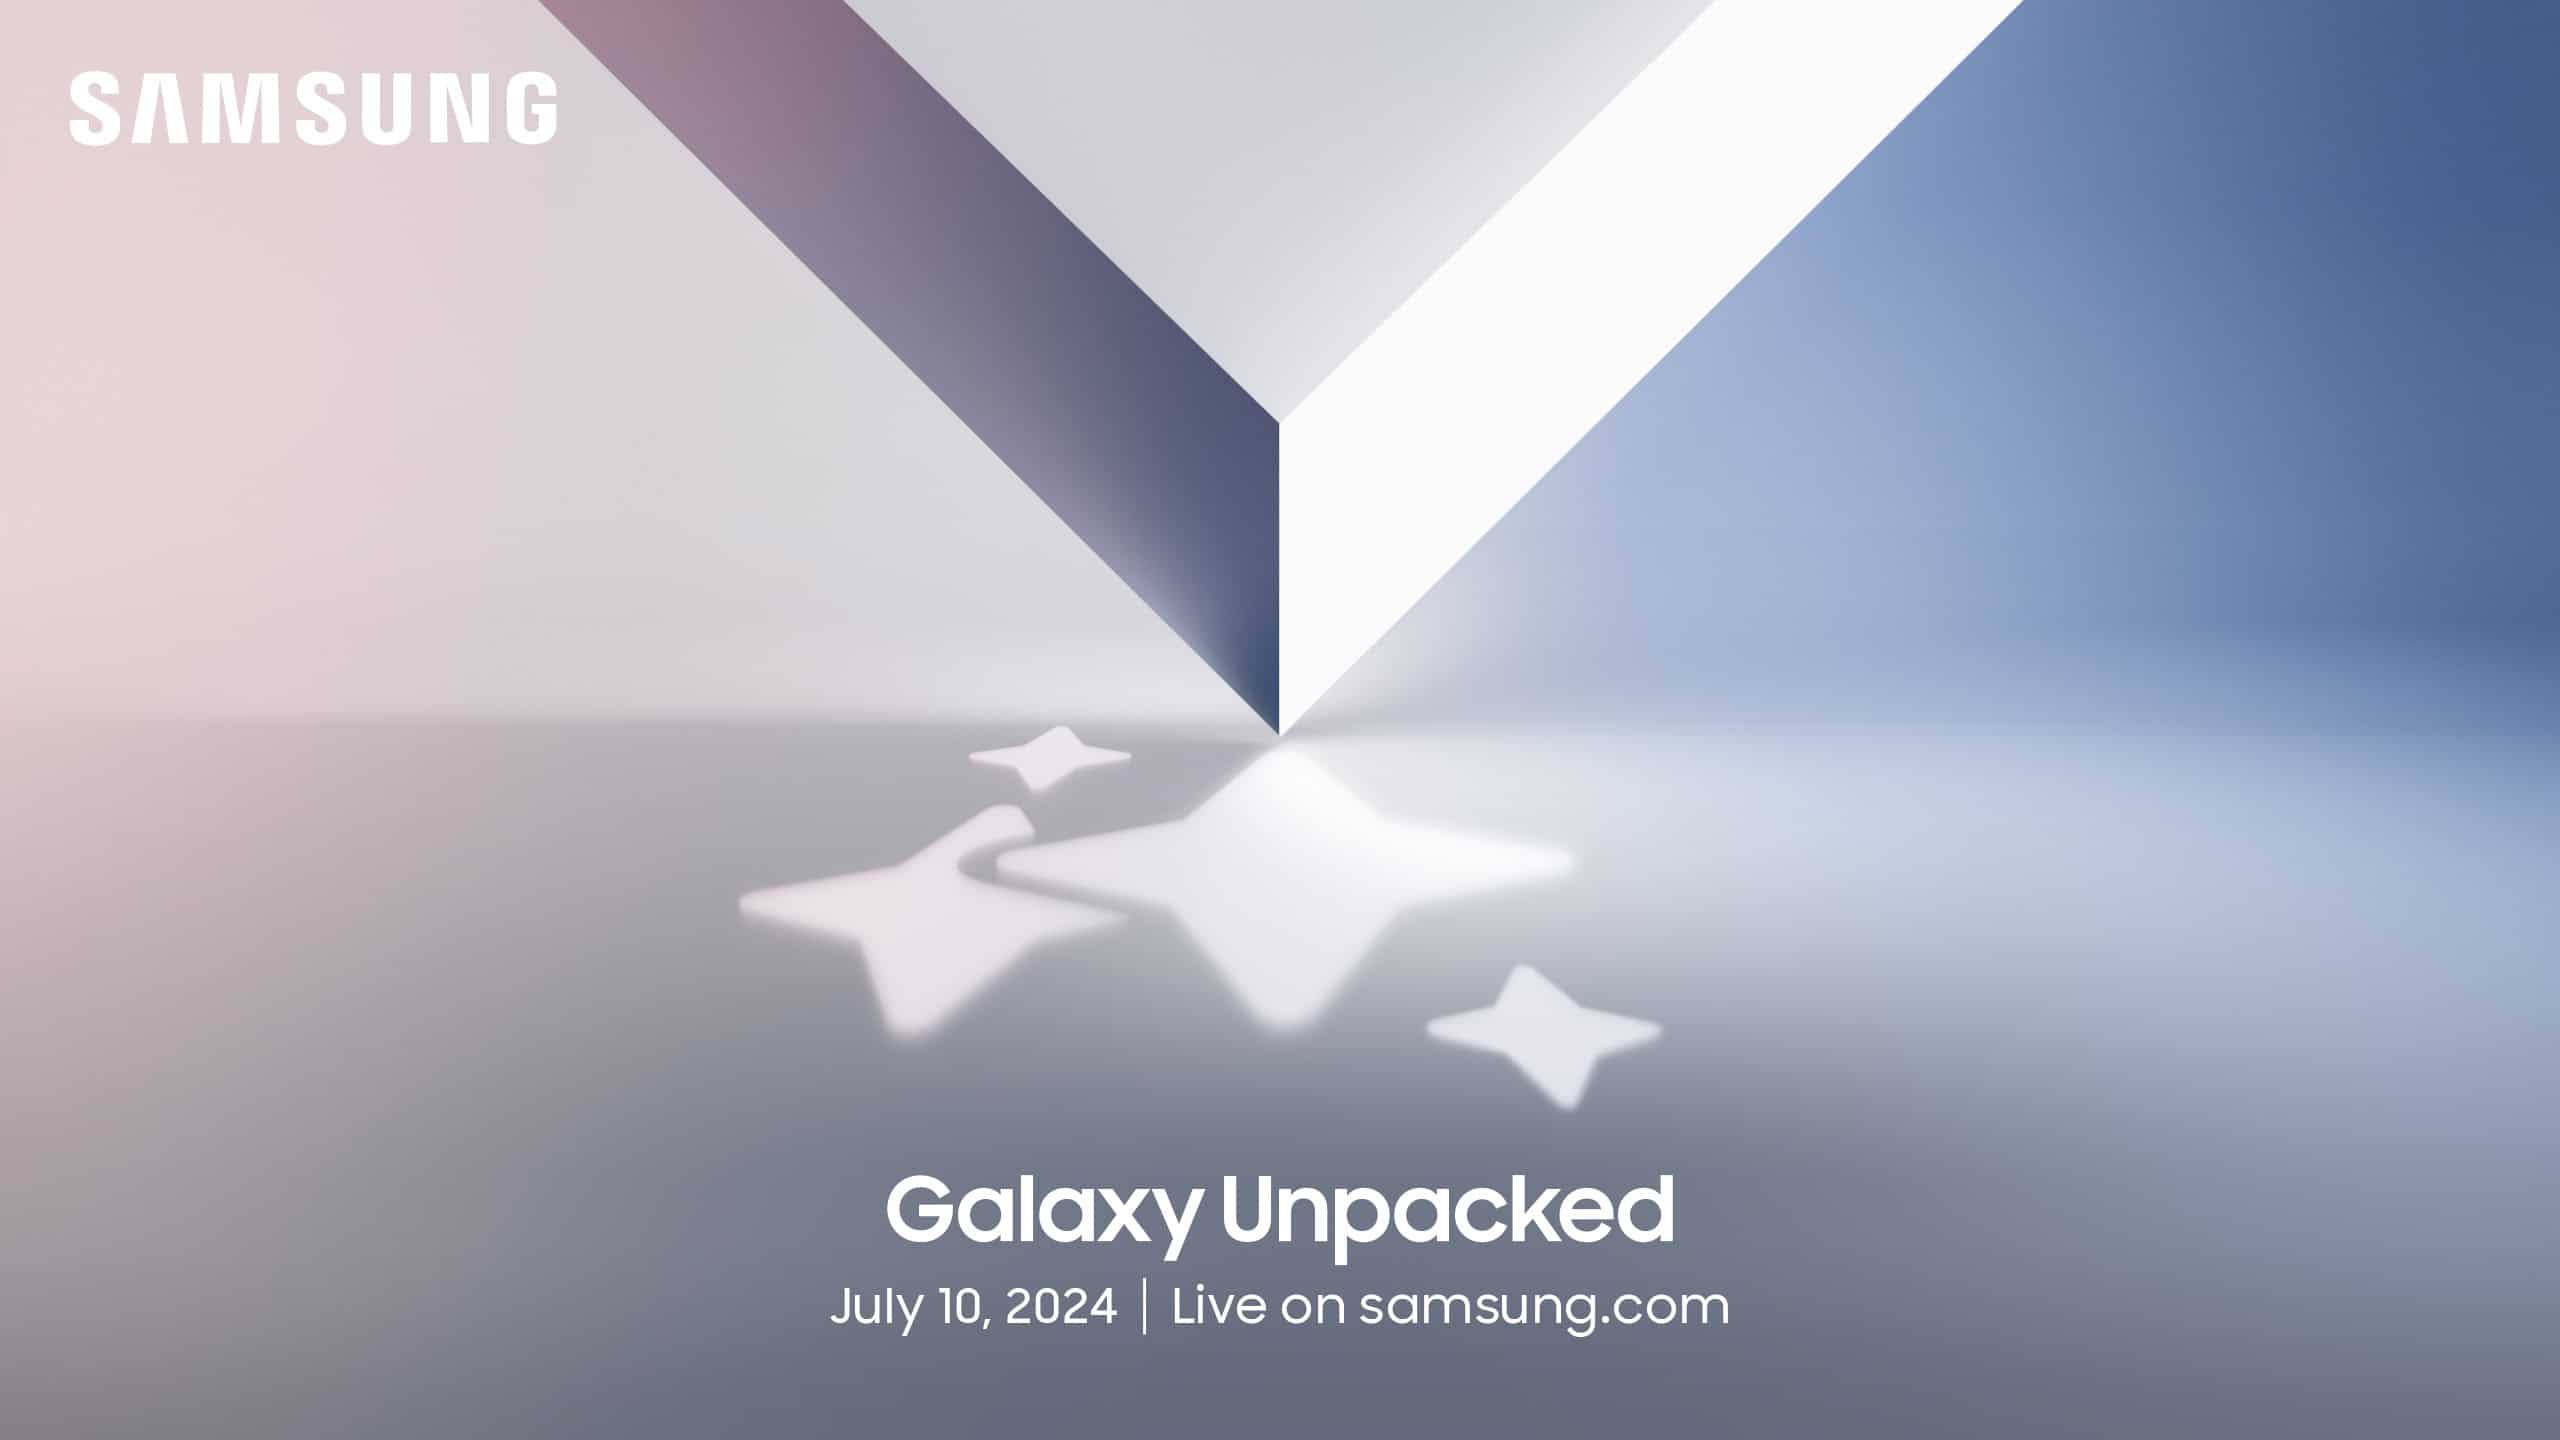 Galaxy Unpacked regresa el 10 de julio para presentar dispositivos Galaxy de próxima generación